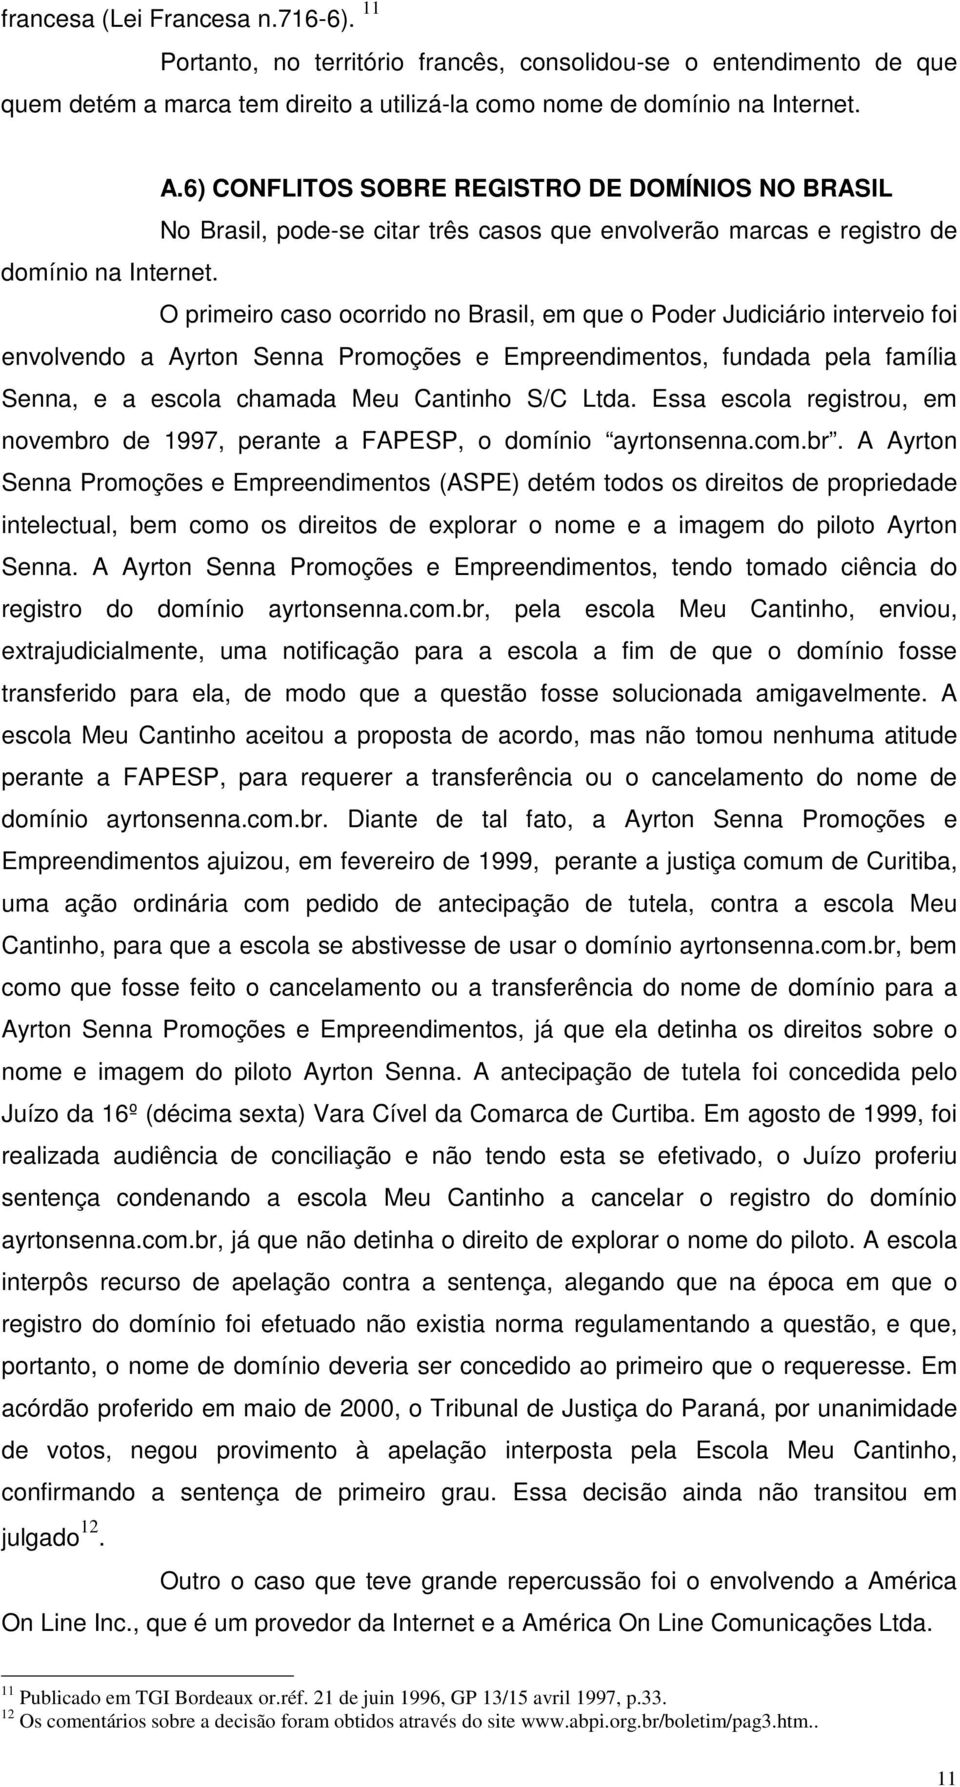 O primeiro caso ocorrido no Brasil, em que o Poder Judiciário interveio foi envolvendo a Ayrton Senna Promoções e Empreendimentos, fundada pela família Senna, e a escola chamada Meu Cantinho S/C Ltda.